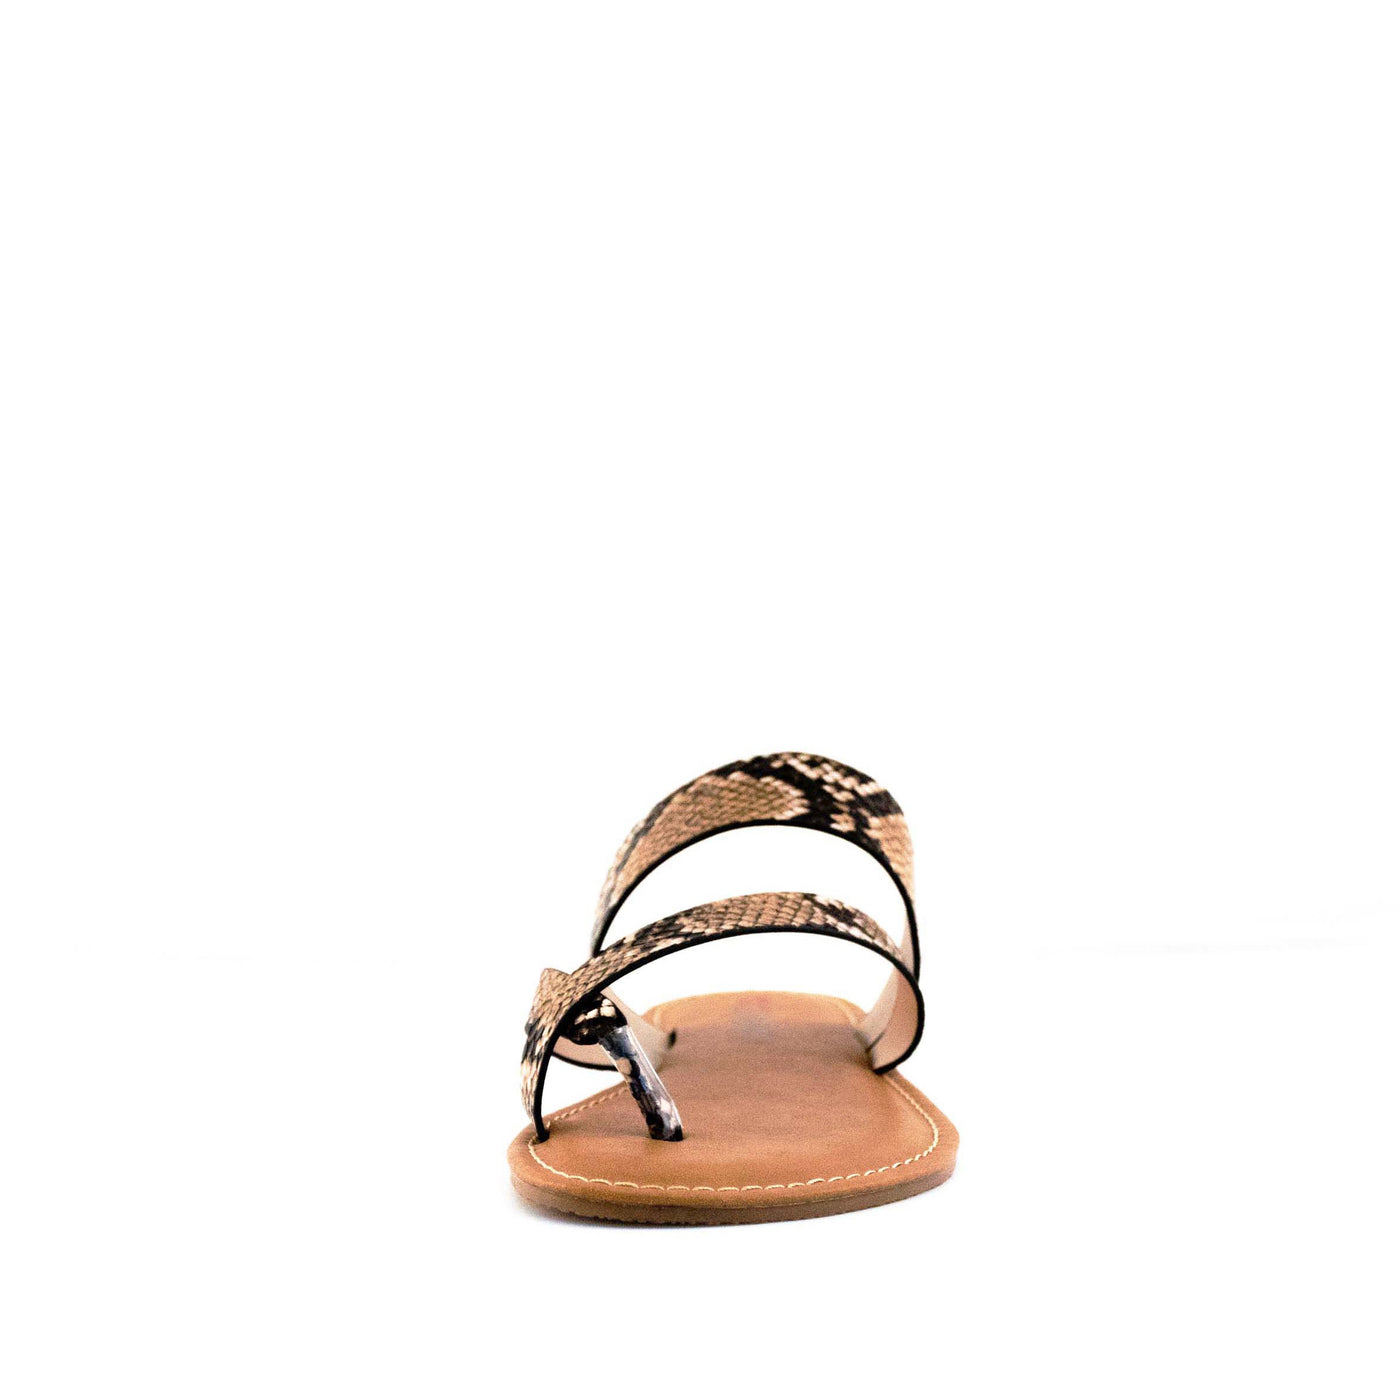 Women's Peak Thong Sandal Snakeskin by Nest Shoes